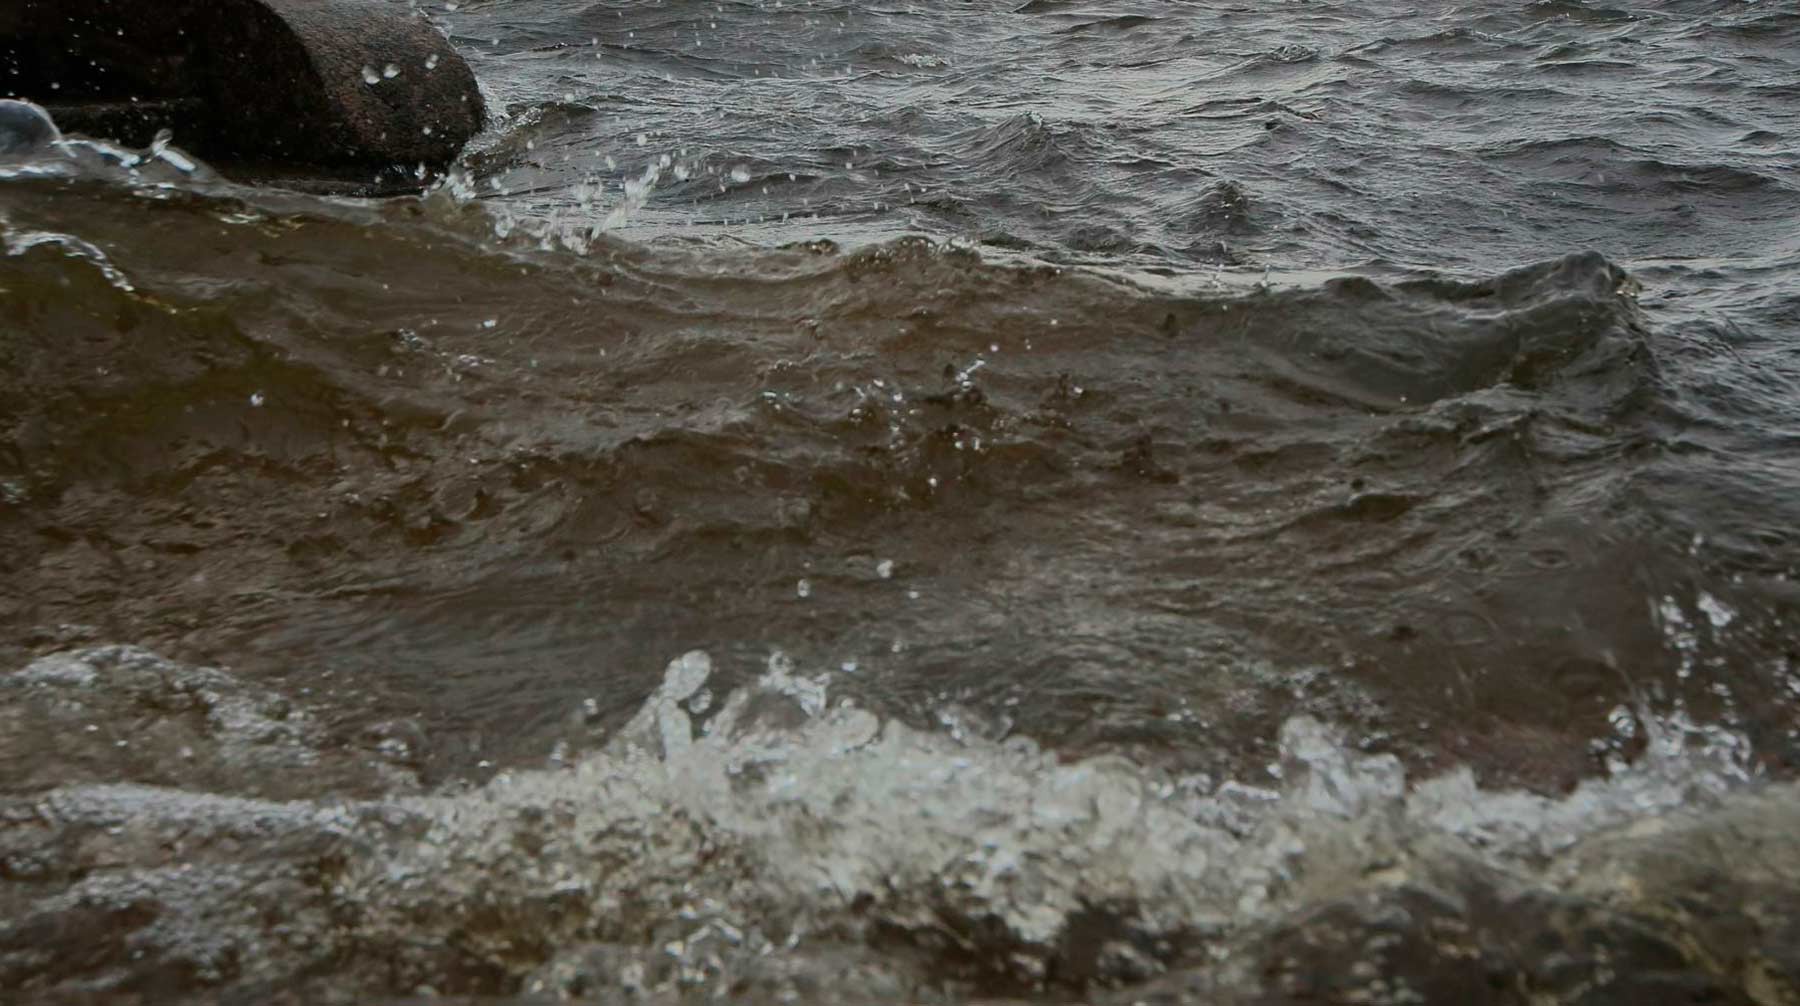 Dailystorm - Два моряка погибли на утонувшем у берегов Румынии сухогрузе